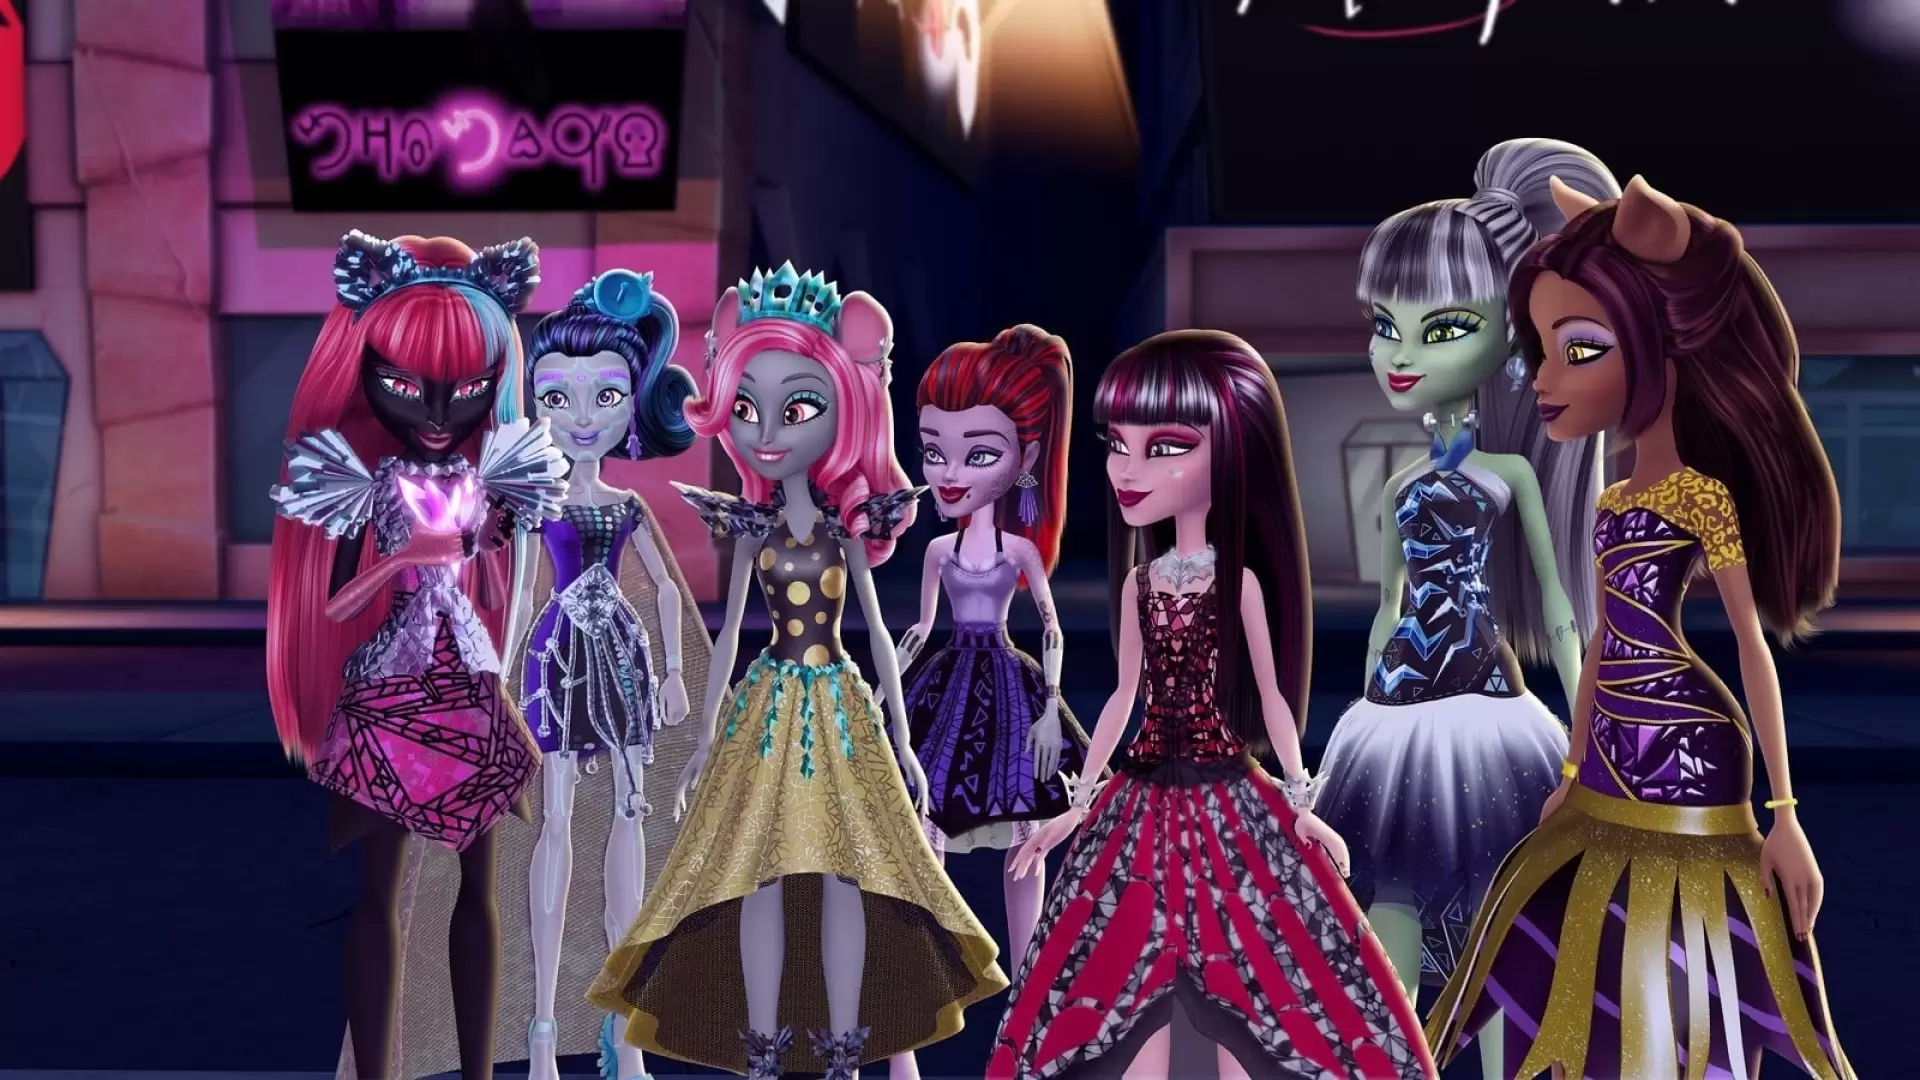 دانلود انیمیشن Monster High: Boo York, Boo York 2015 با زیرنویس فارسی